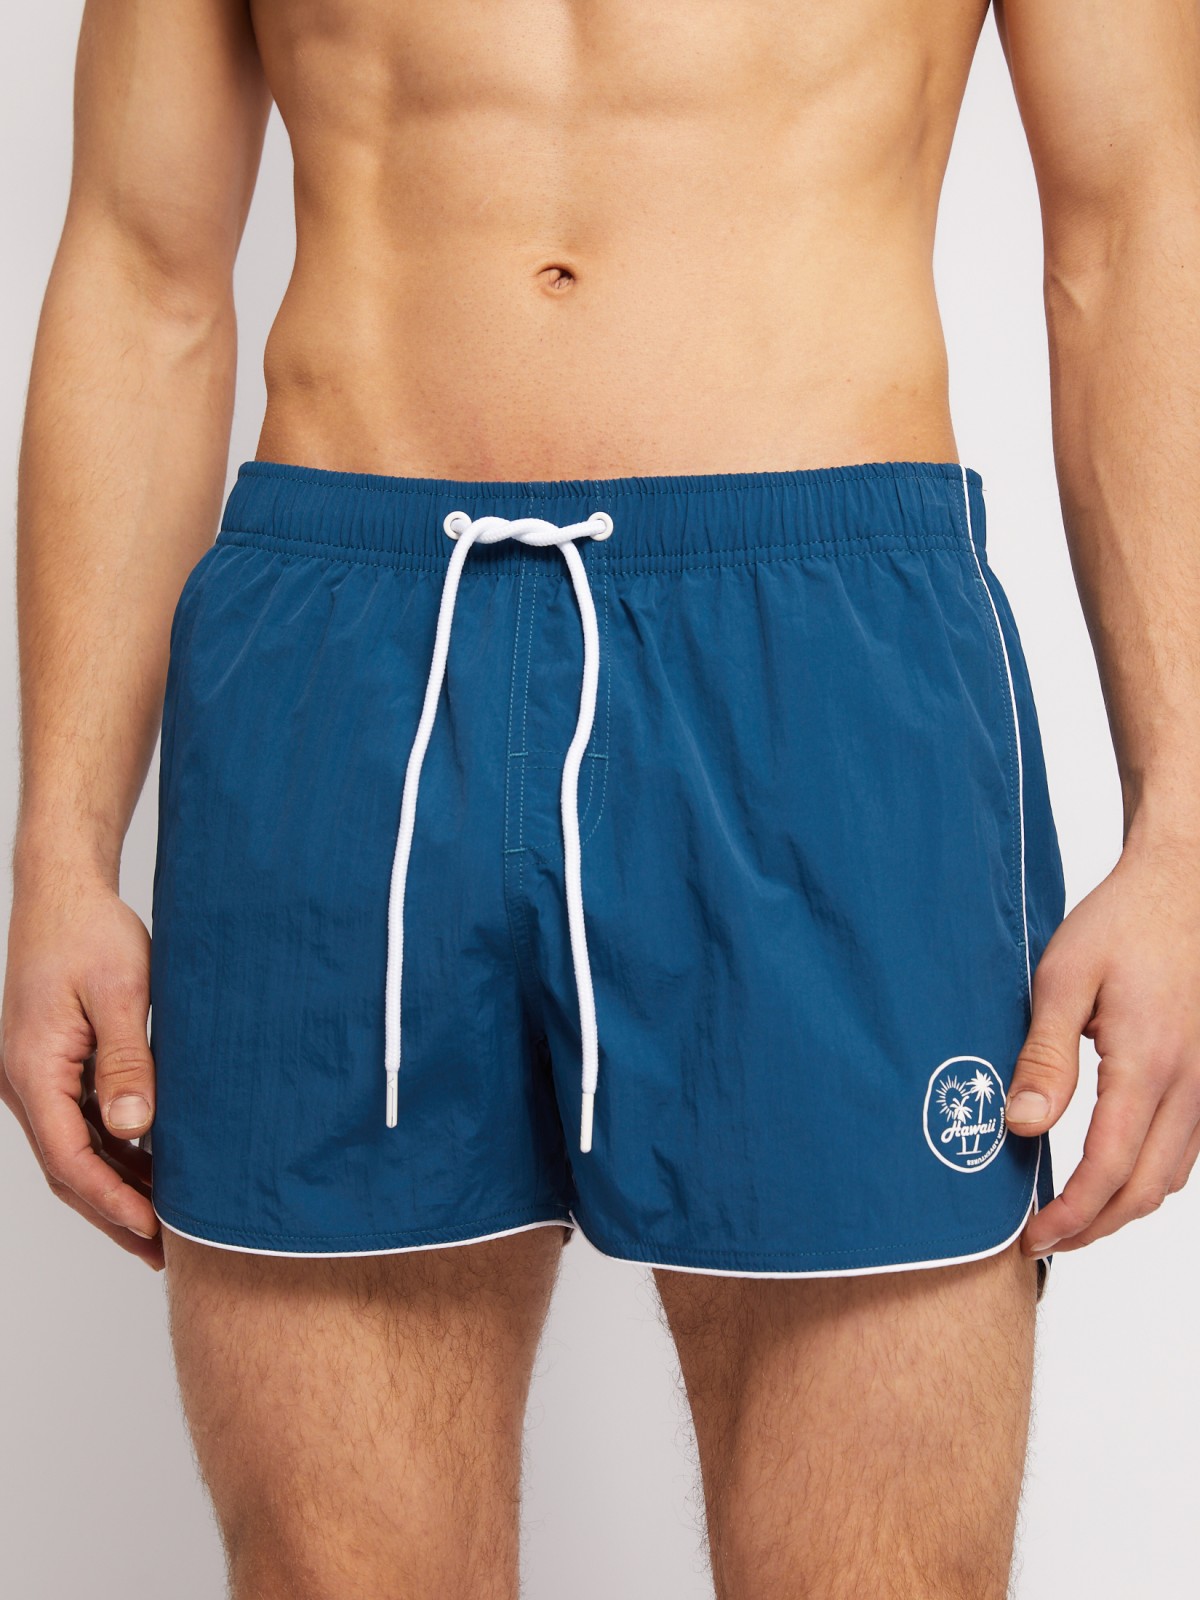 Пляжные шорты (для плавания) zolla 014257S0L082, цвет темно-бирюзовый, размер M - фото 2